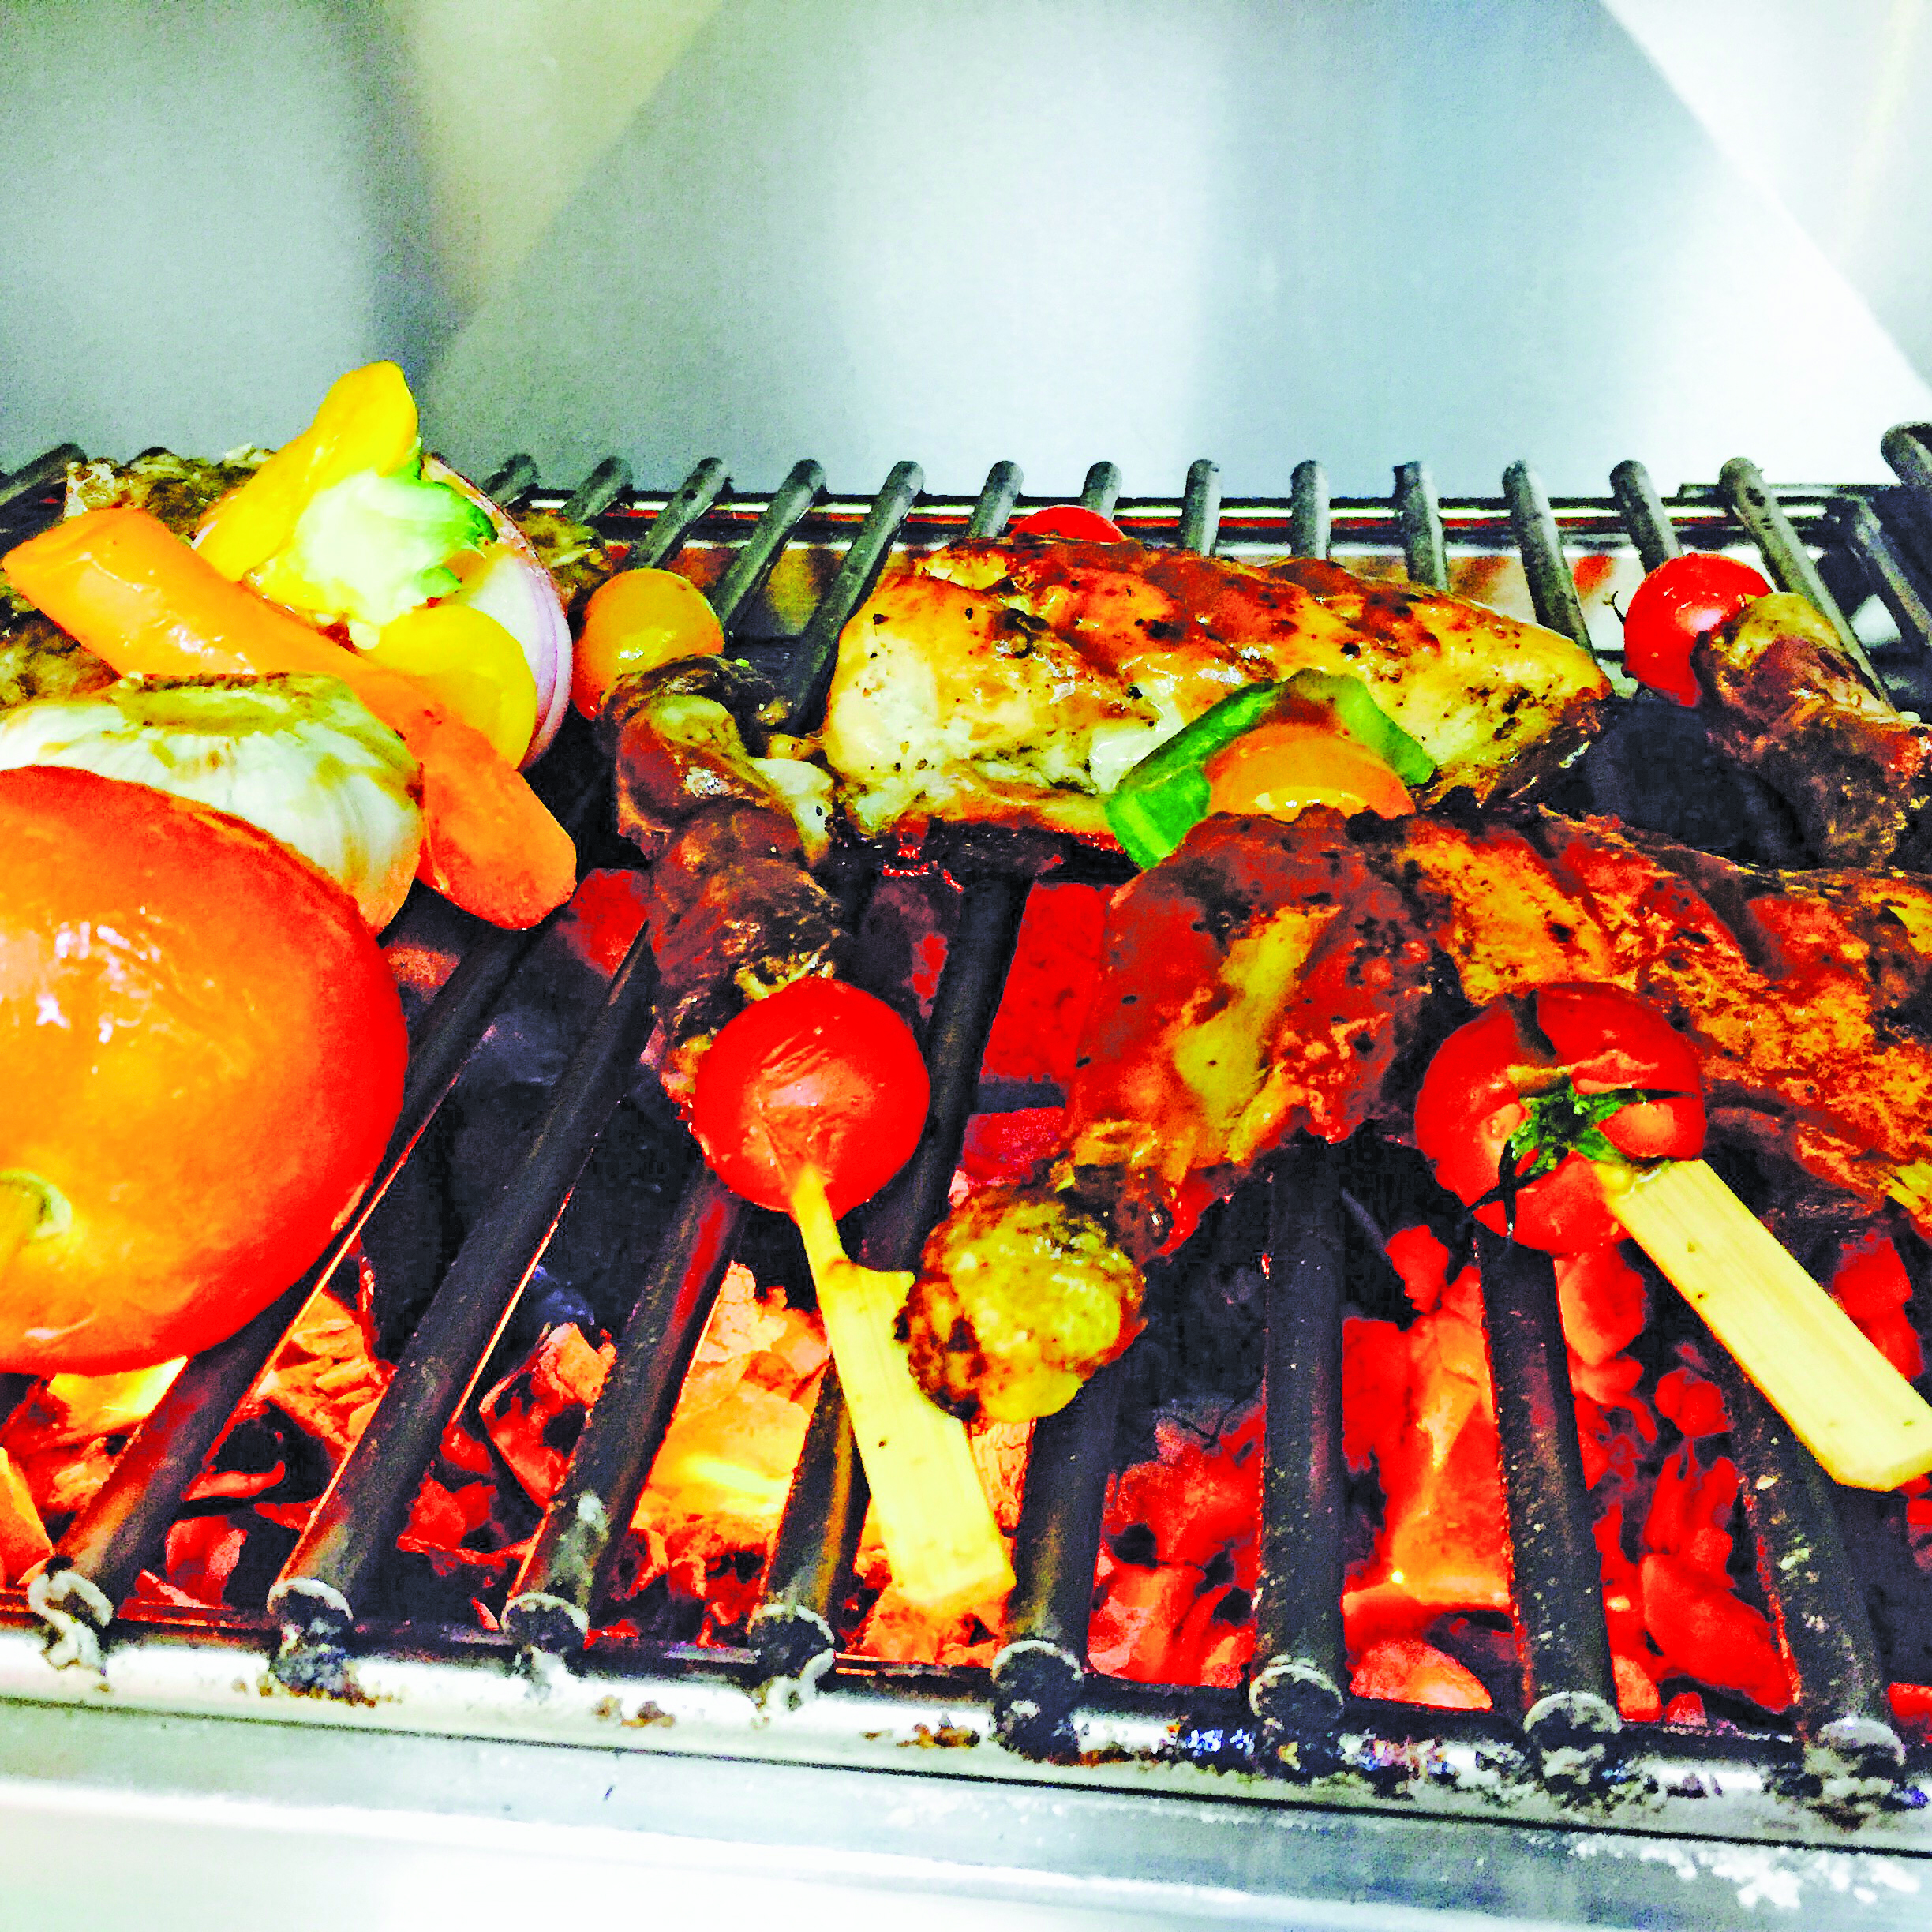 Oman Dining: This weekend eat at Savannah BBQ